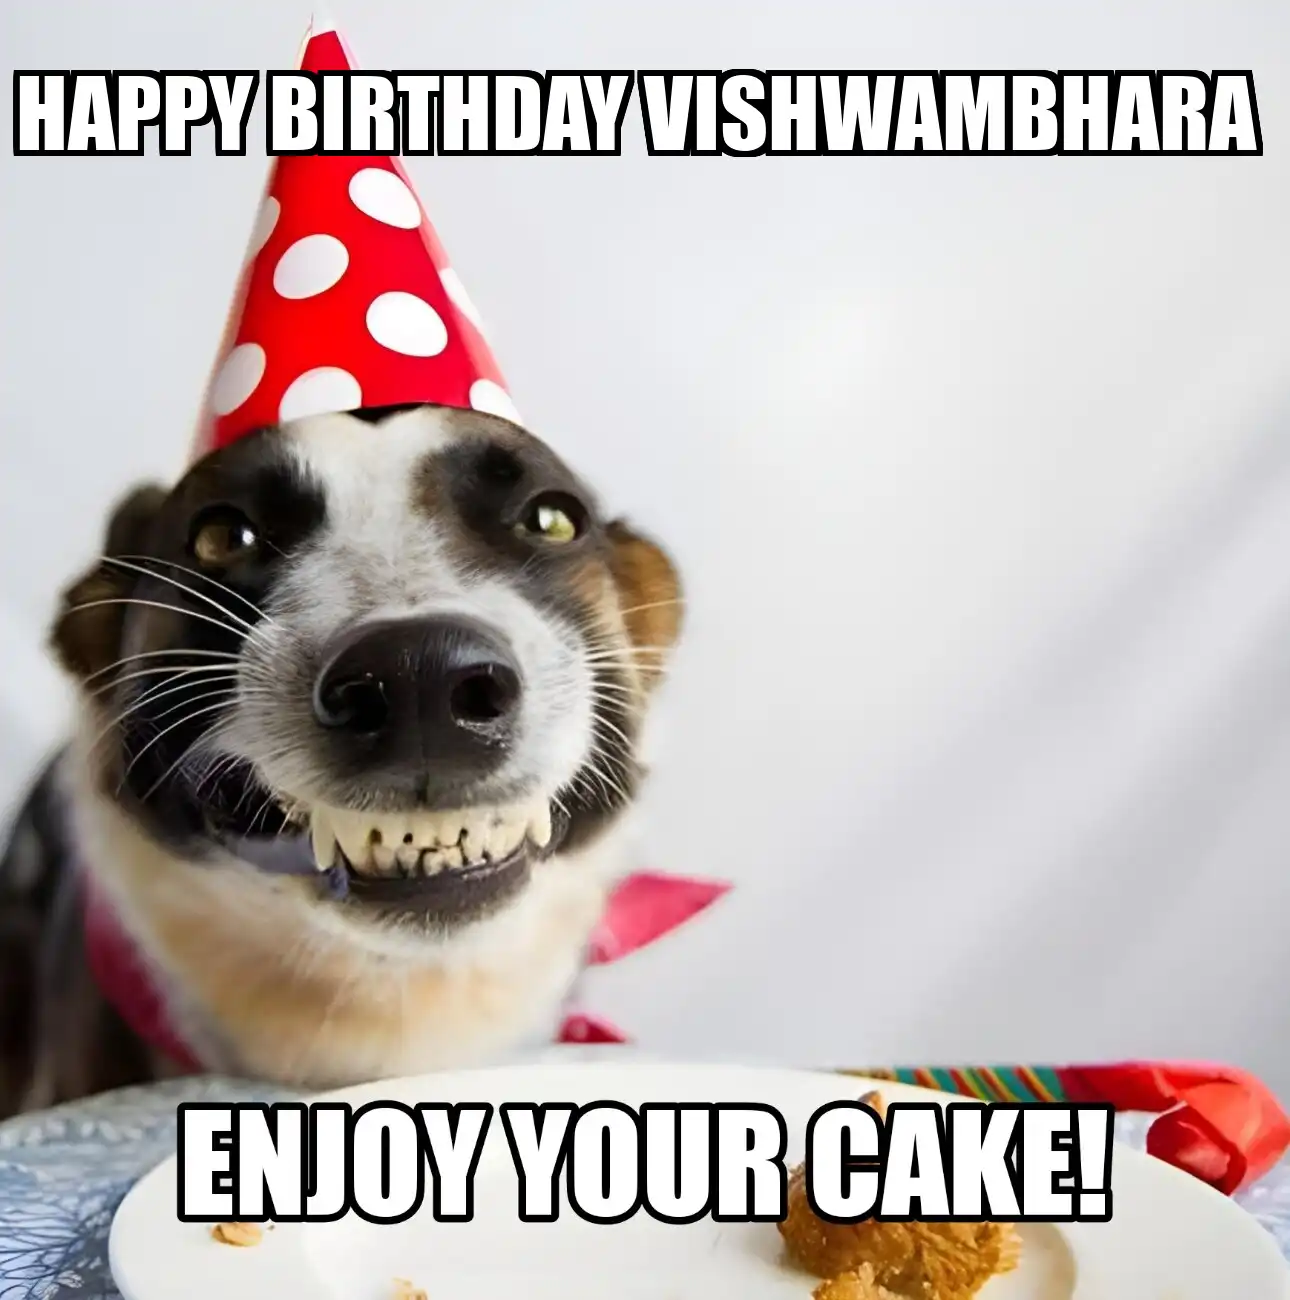 Happy Birthday Vishwambhara Enjoy Your Cake Dog Meme